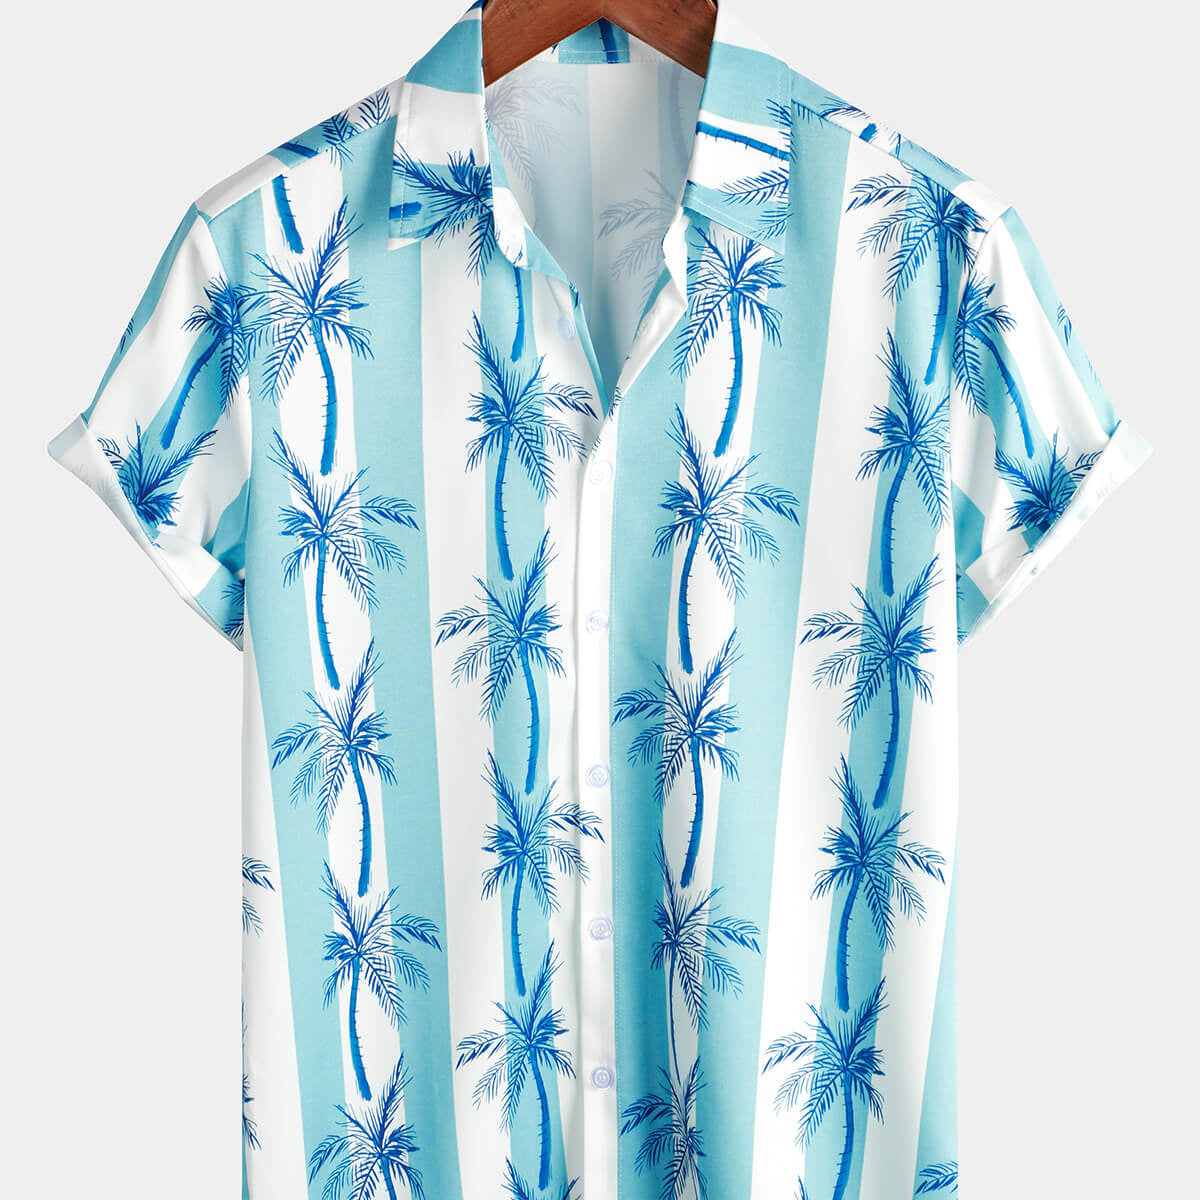 Camisa hawaiana de manga corta con botones y rayas blancas y azules claras con estampado de palmeras tropicales para hombre